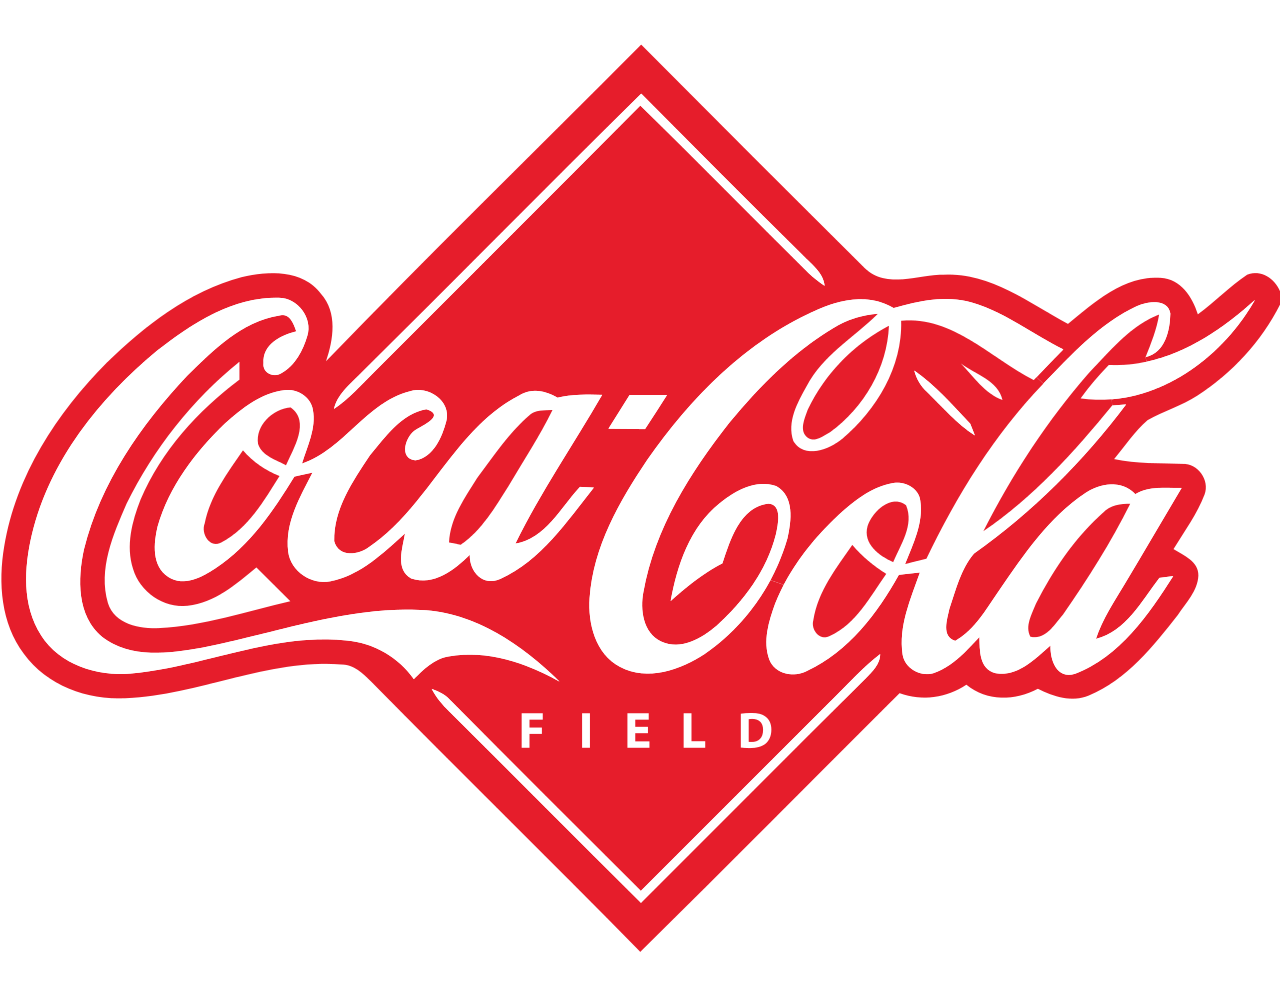 coca cola f?eld logo png images #4633